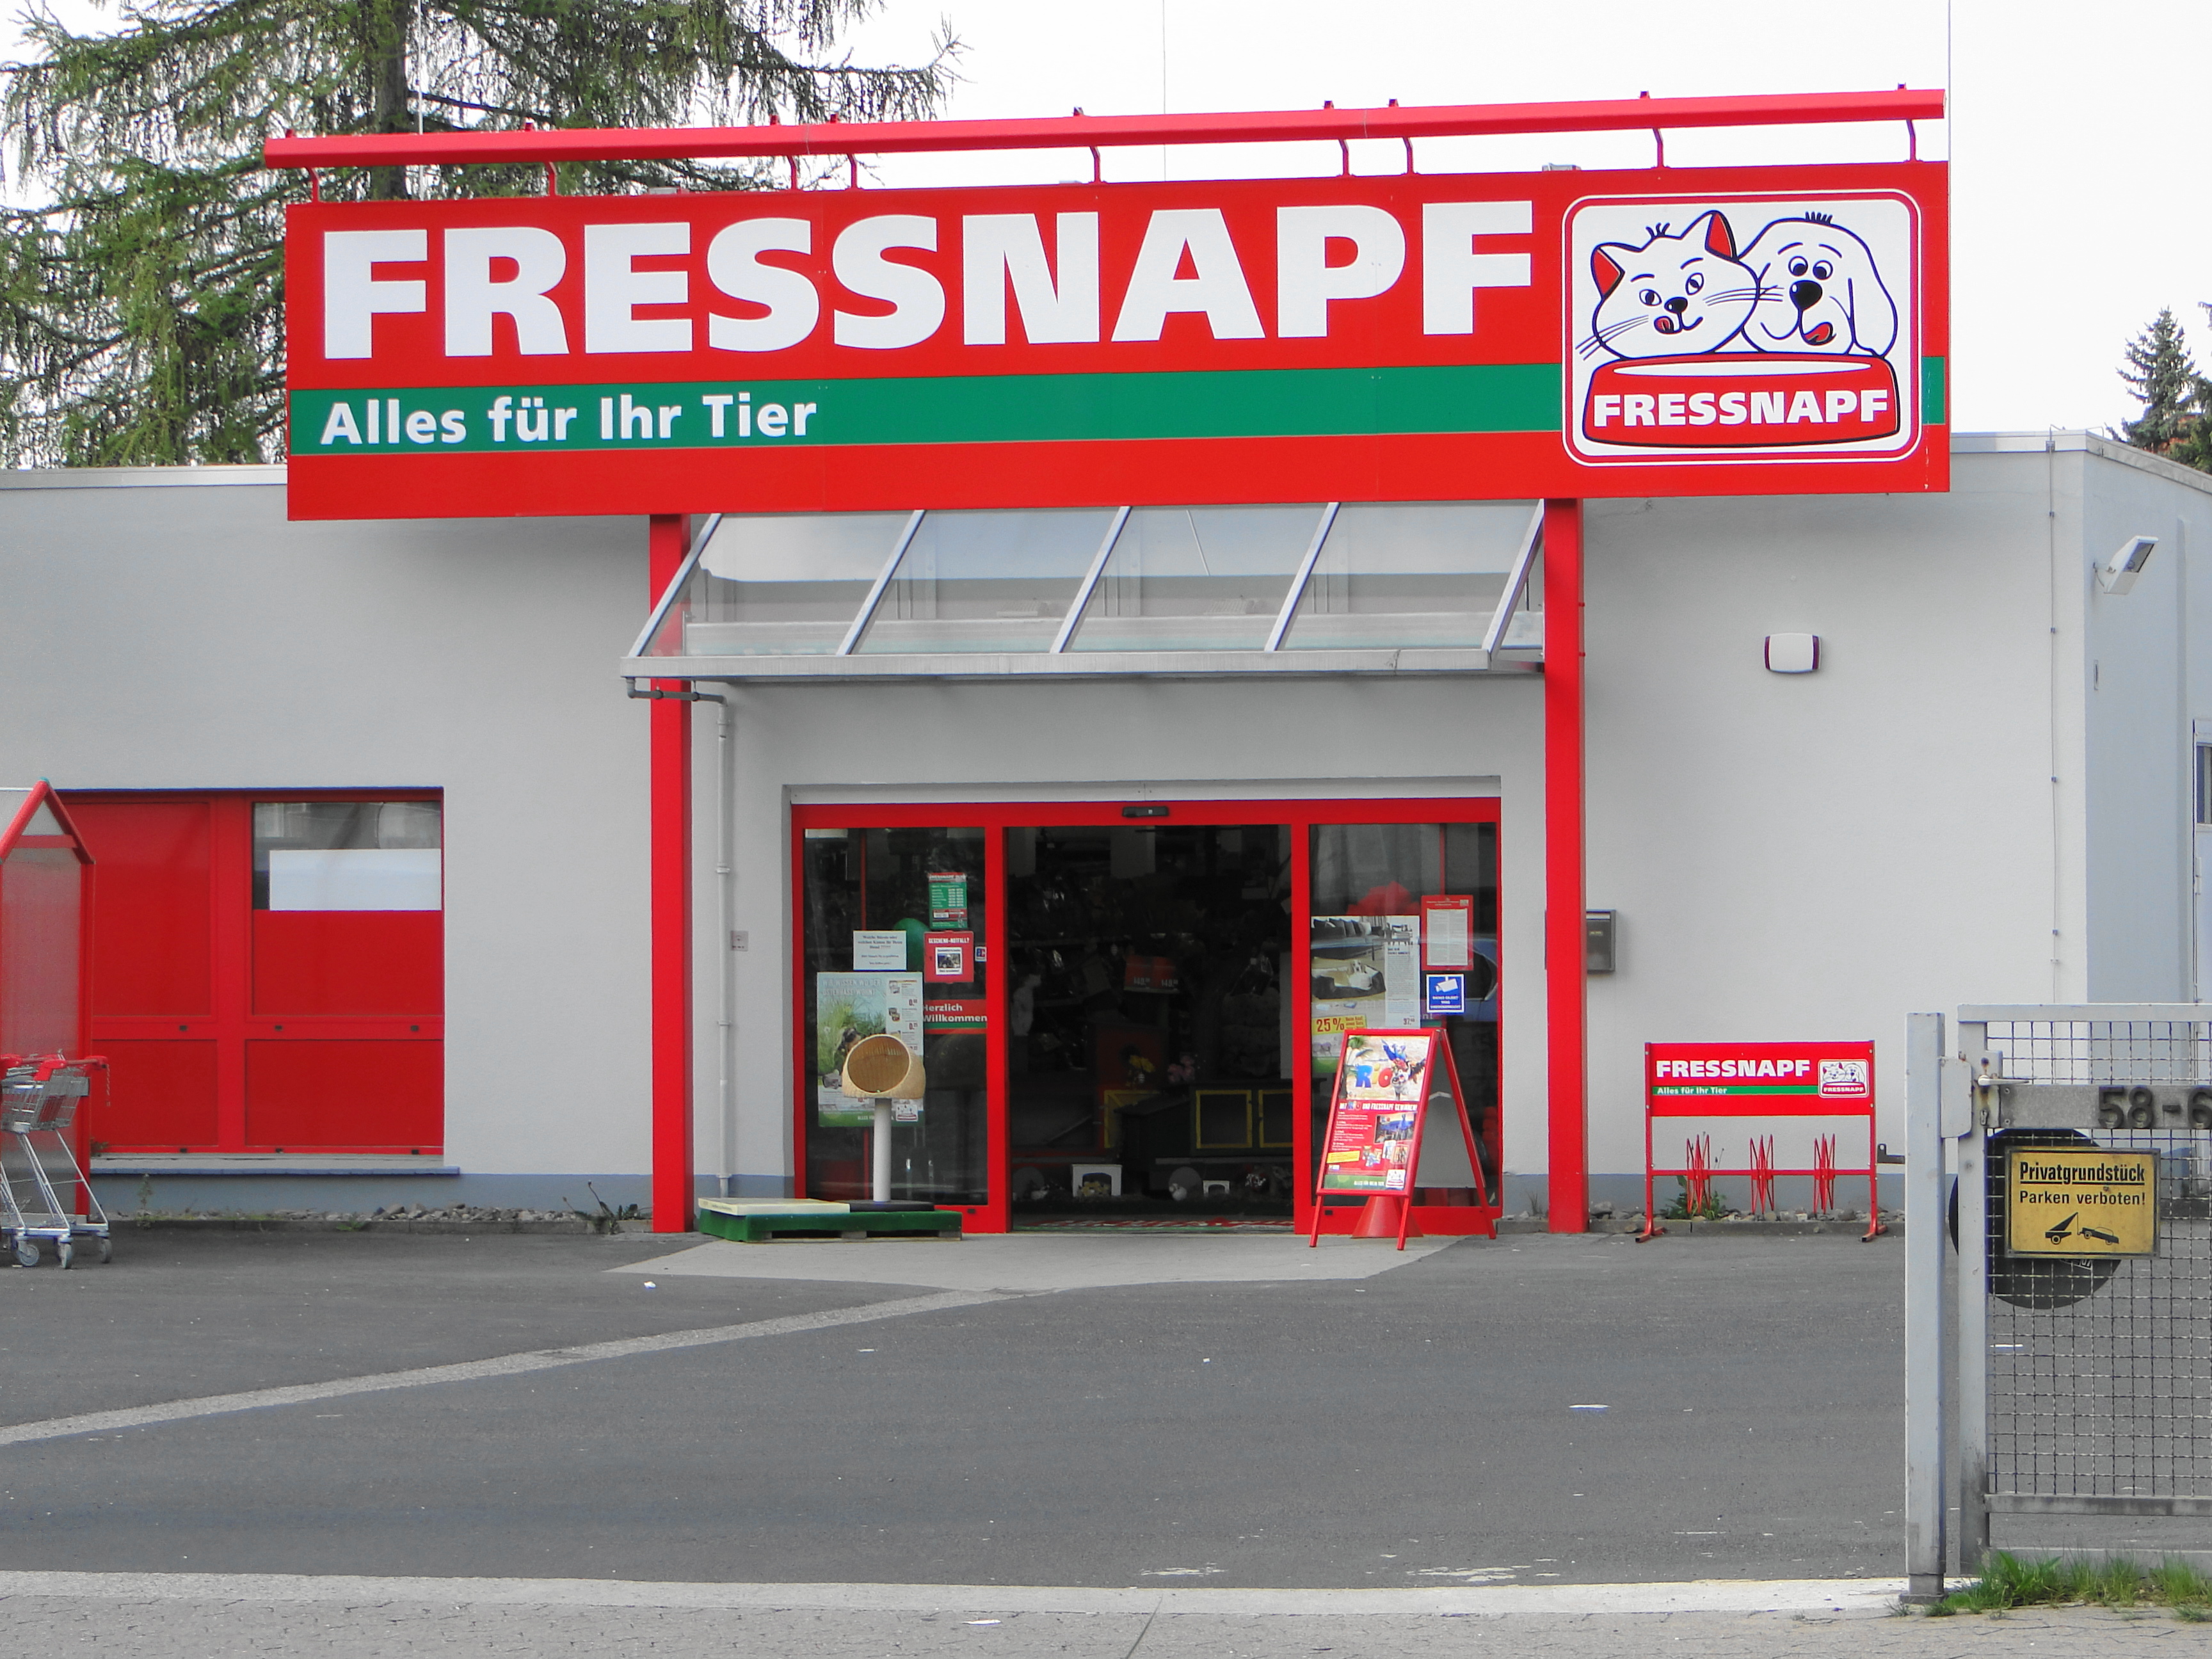 Tierbedarf FRESSNAPF in der Kasseler Landstr. 58